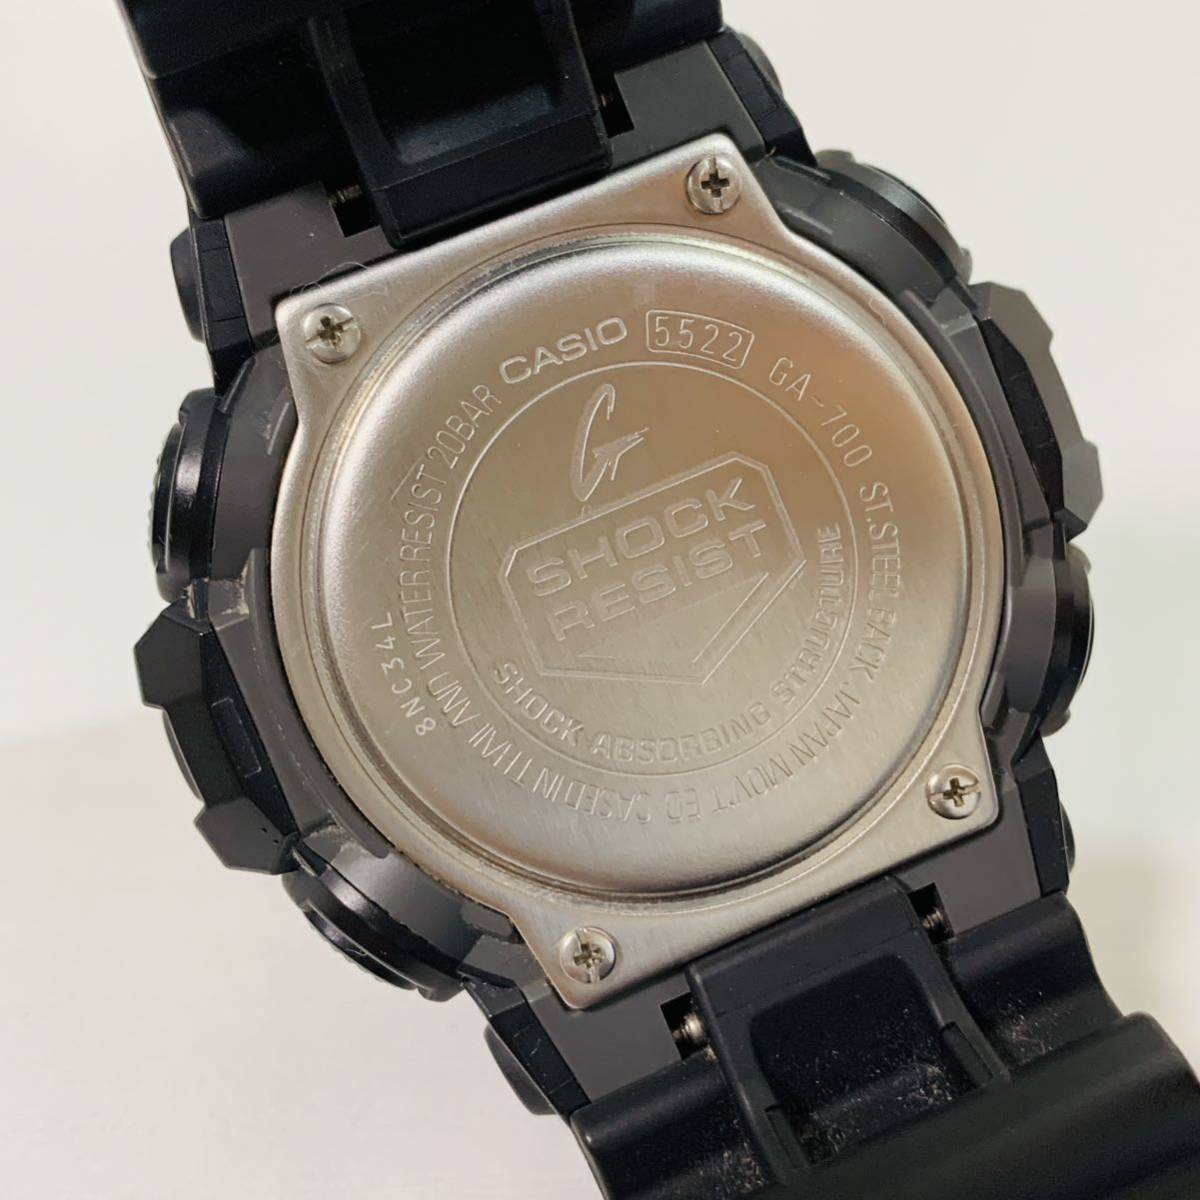 カシオ CASIO G-SHOCK Gショック 腕時計 メンズ 5522 GA-700 ブラック アナログ デジタル表示付 中古 美品 動作確認済_画像6